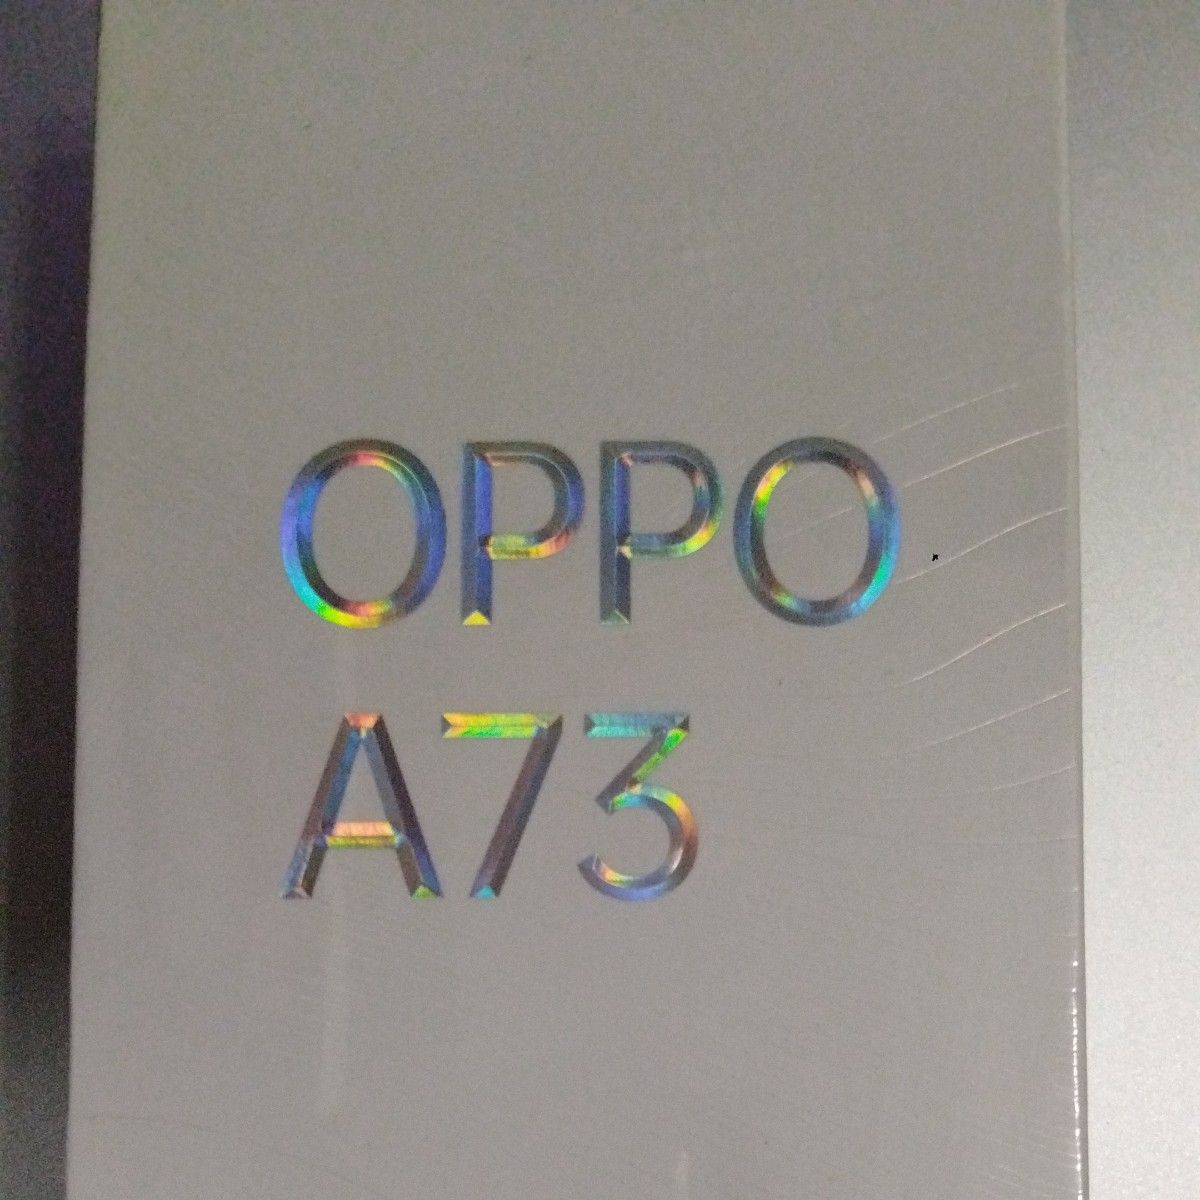 新品】OPPO オッポー A73 ネービーブルー 青 本体 2台セット スマホ